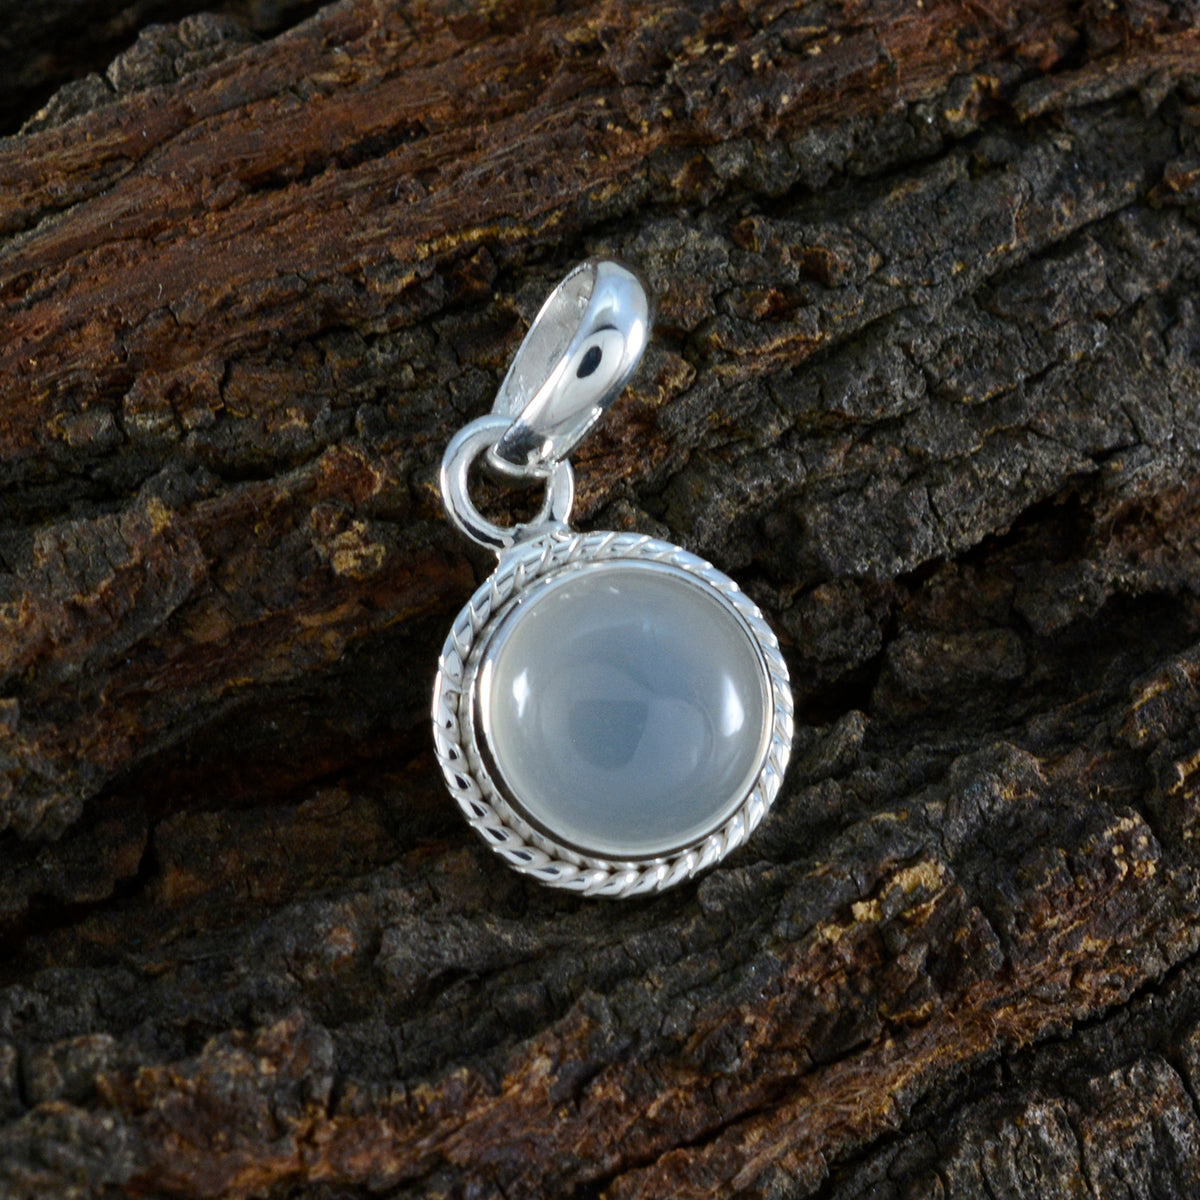 riyo привлекательные драгоценные камни круглый кабошон белая радуга лунный камень твердый серебряный кулон подарок на свадьбу